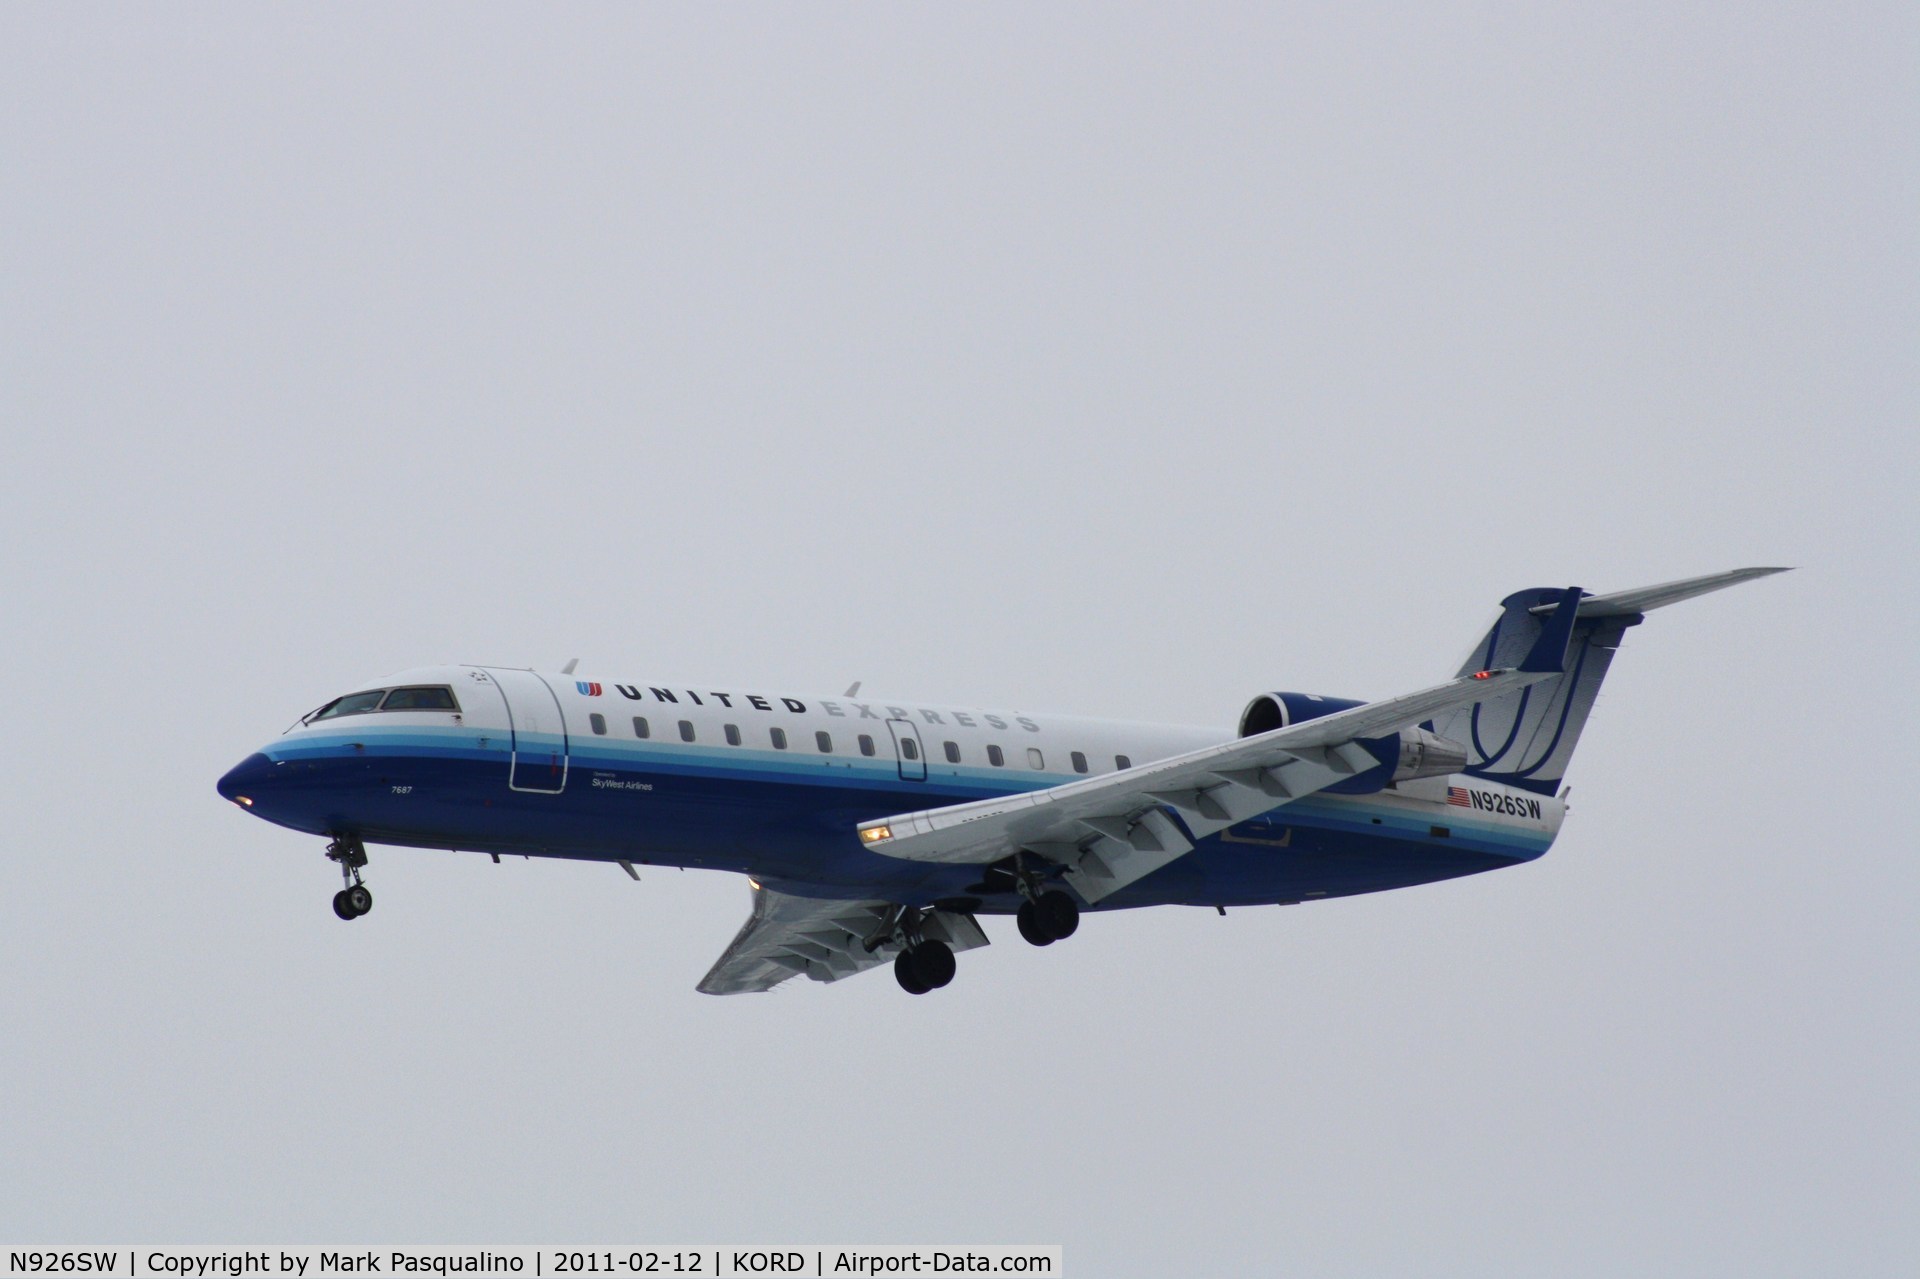 N926SW, 2002 Bombardier CRJ-200LR (CL-600-2B19) C/N 7687, CL-600-2B19